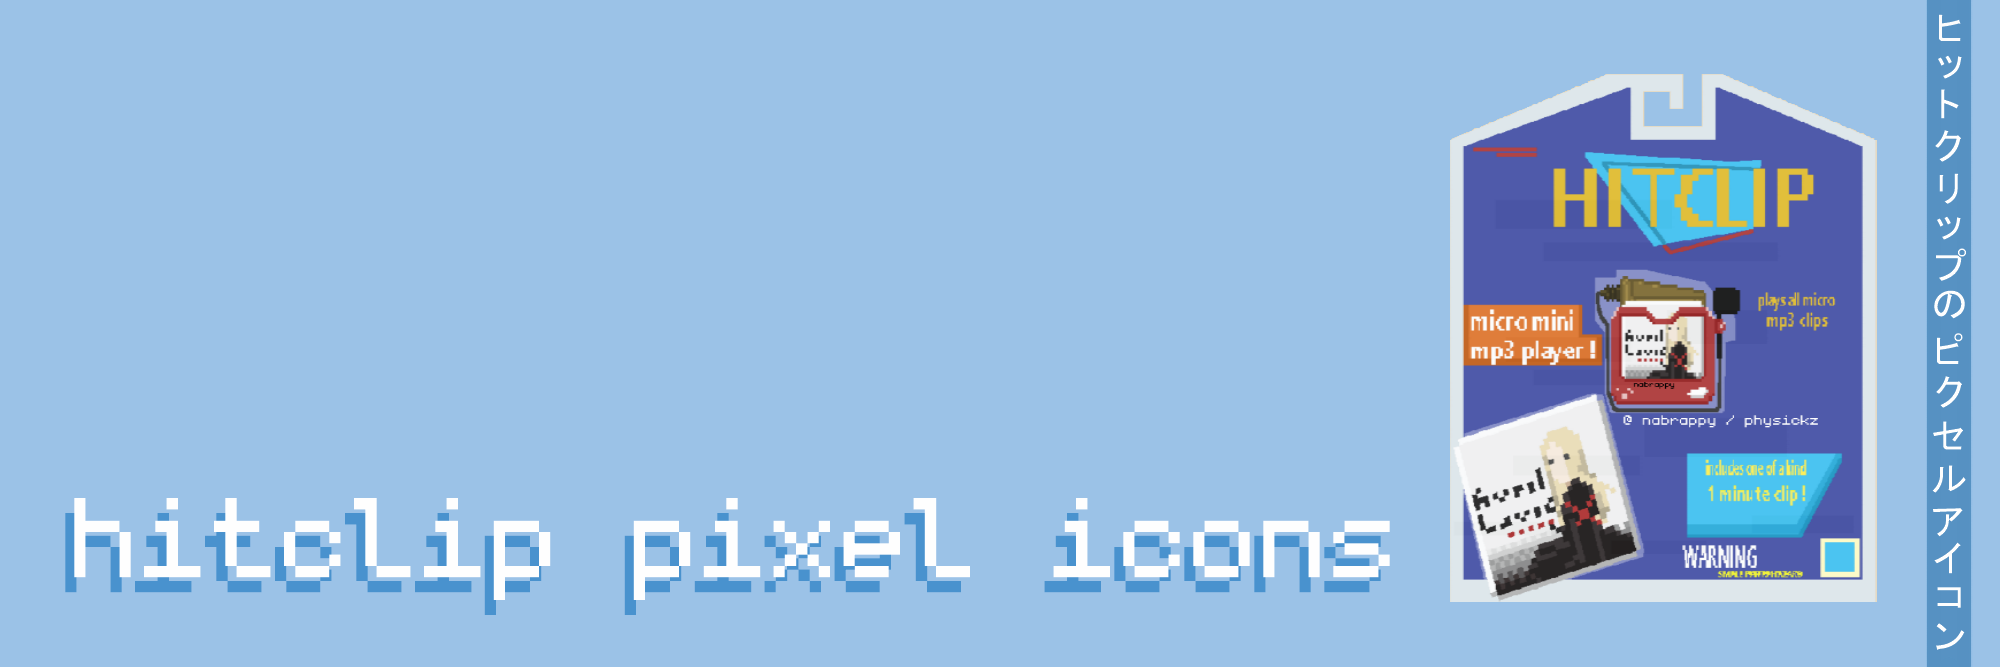 hitclip | pixel icons